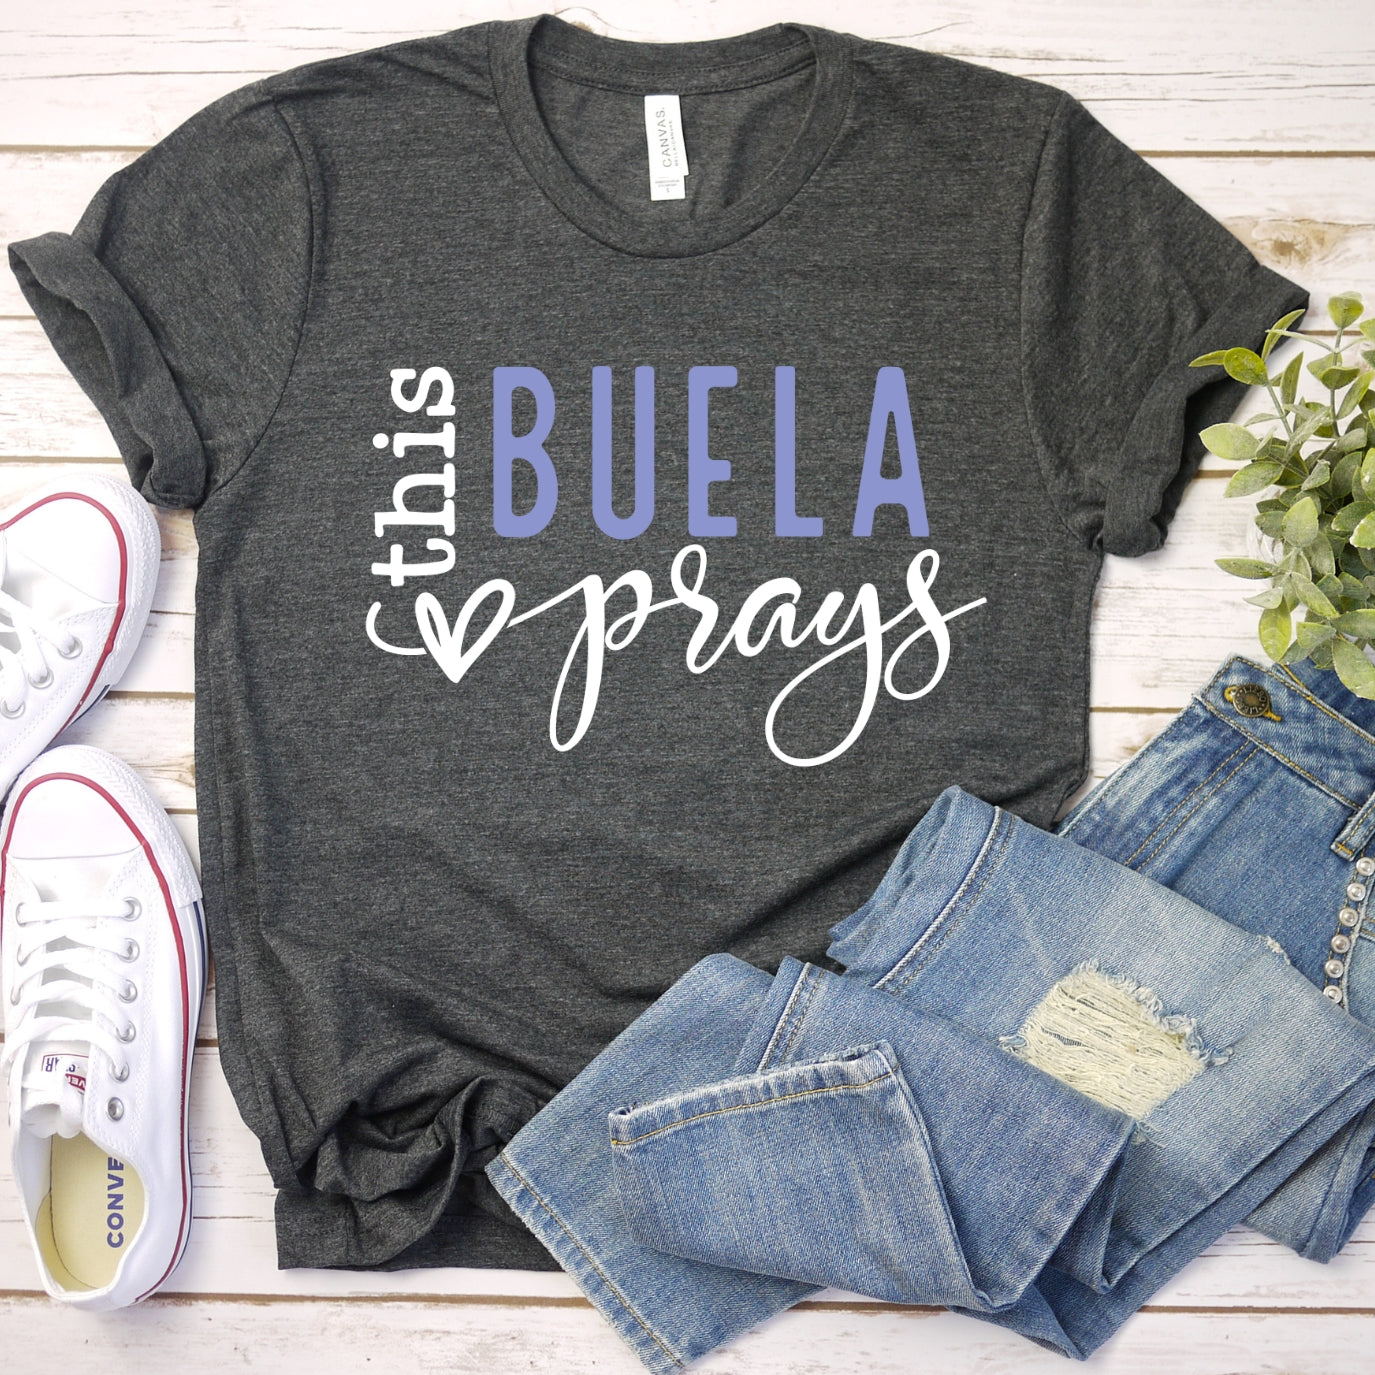 This Buela Prays Women's T-Shirt